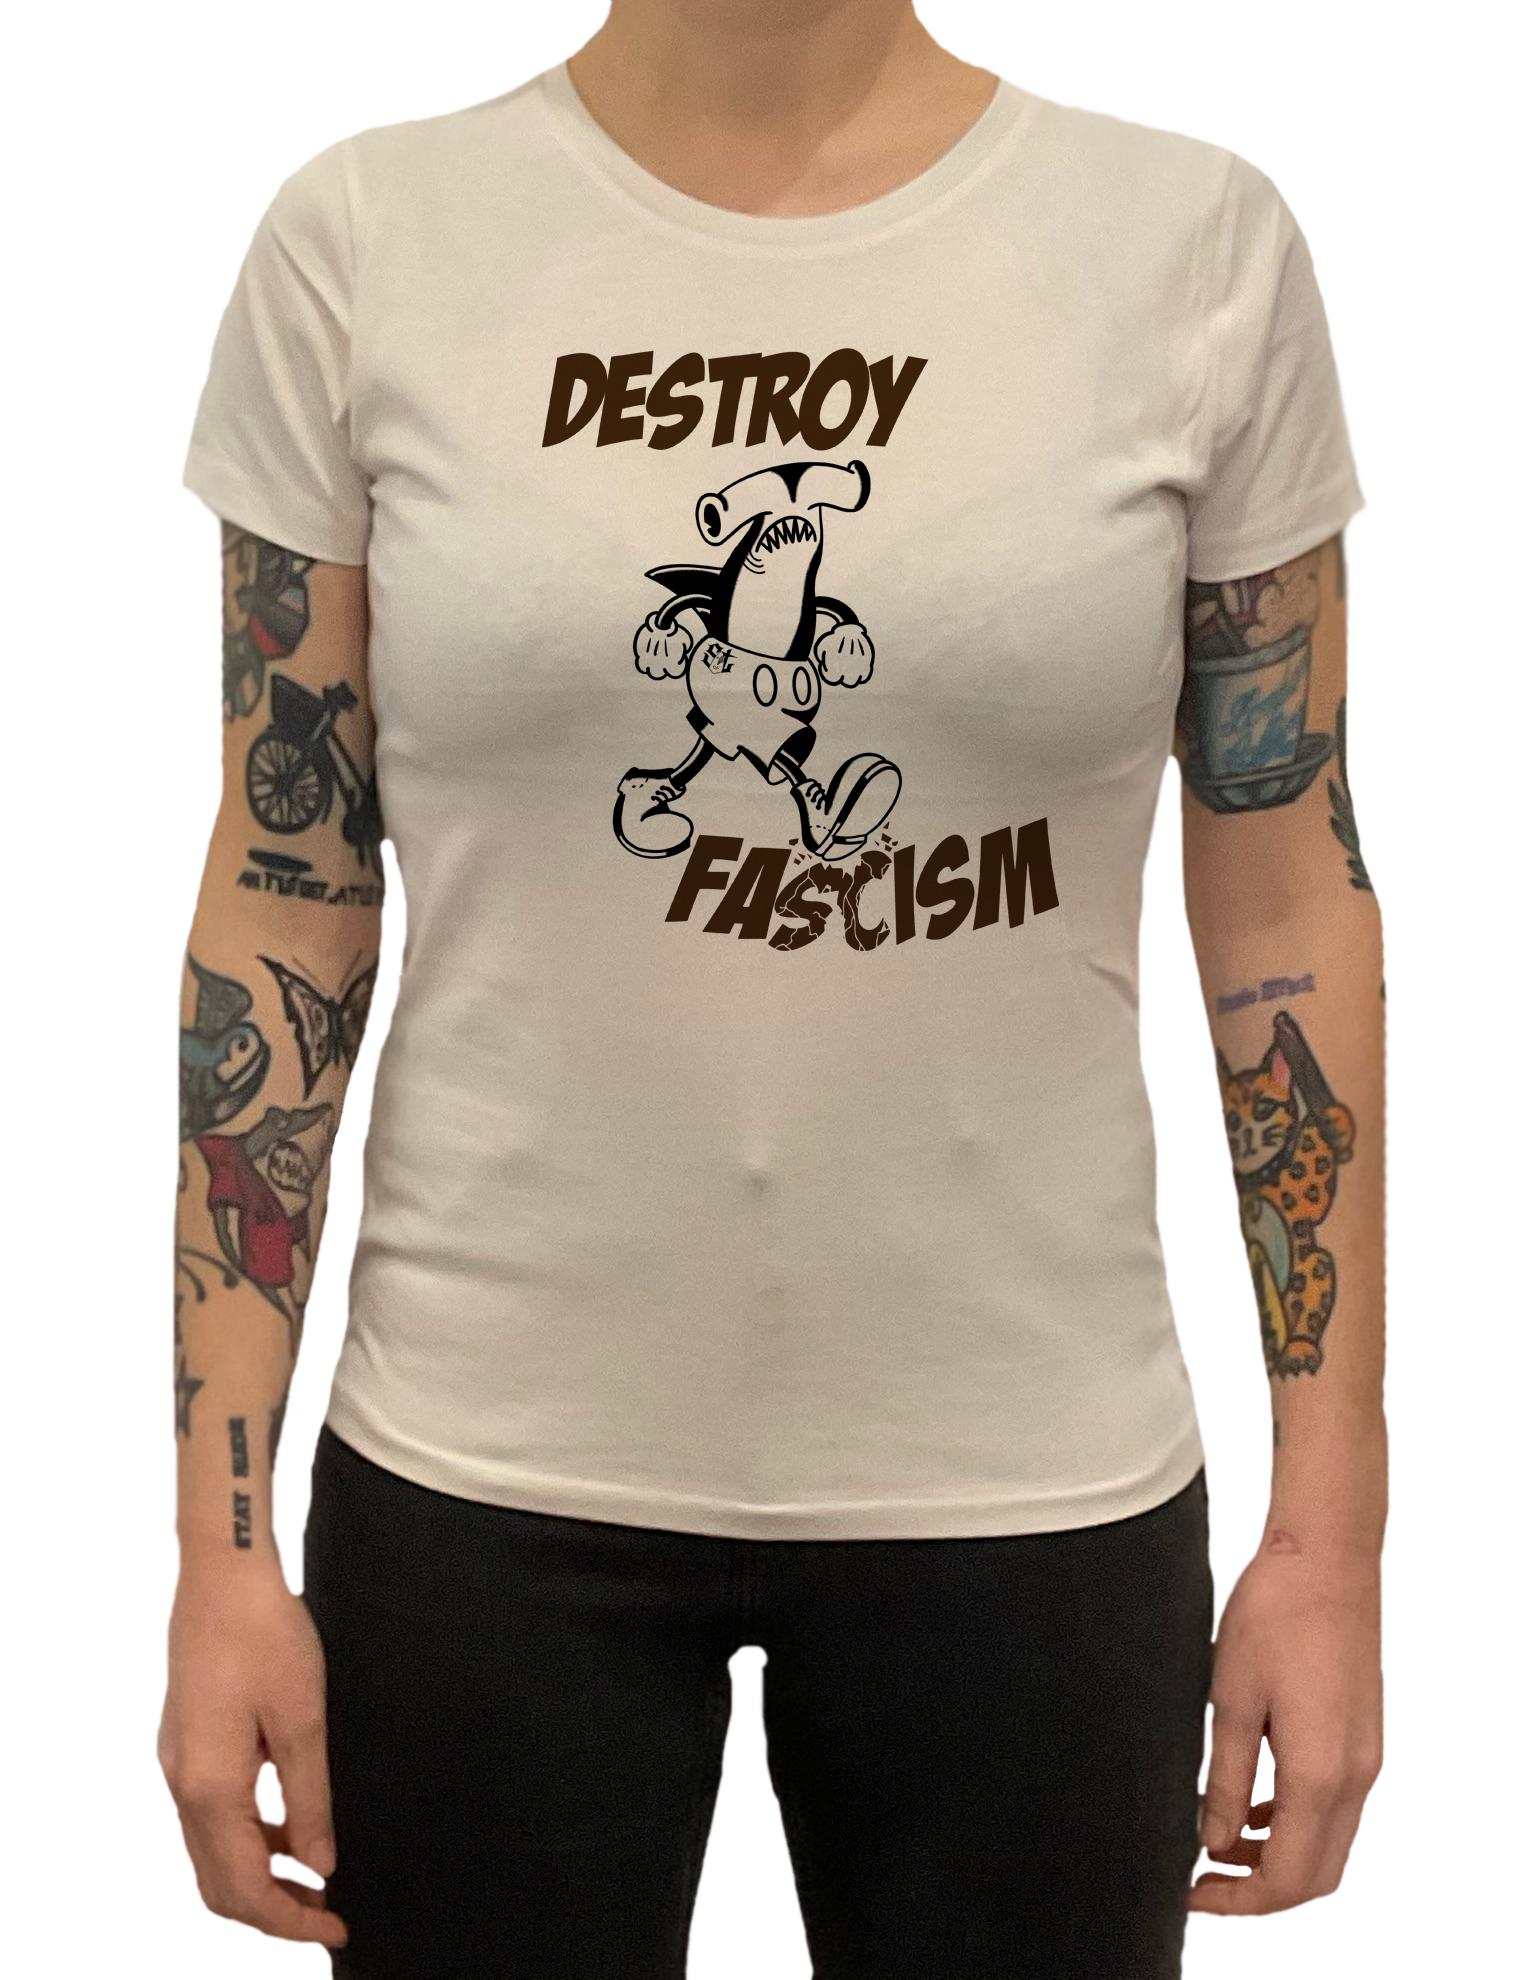 Destroy fascism